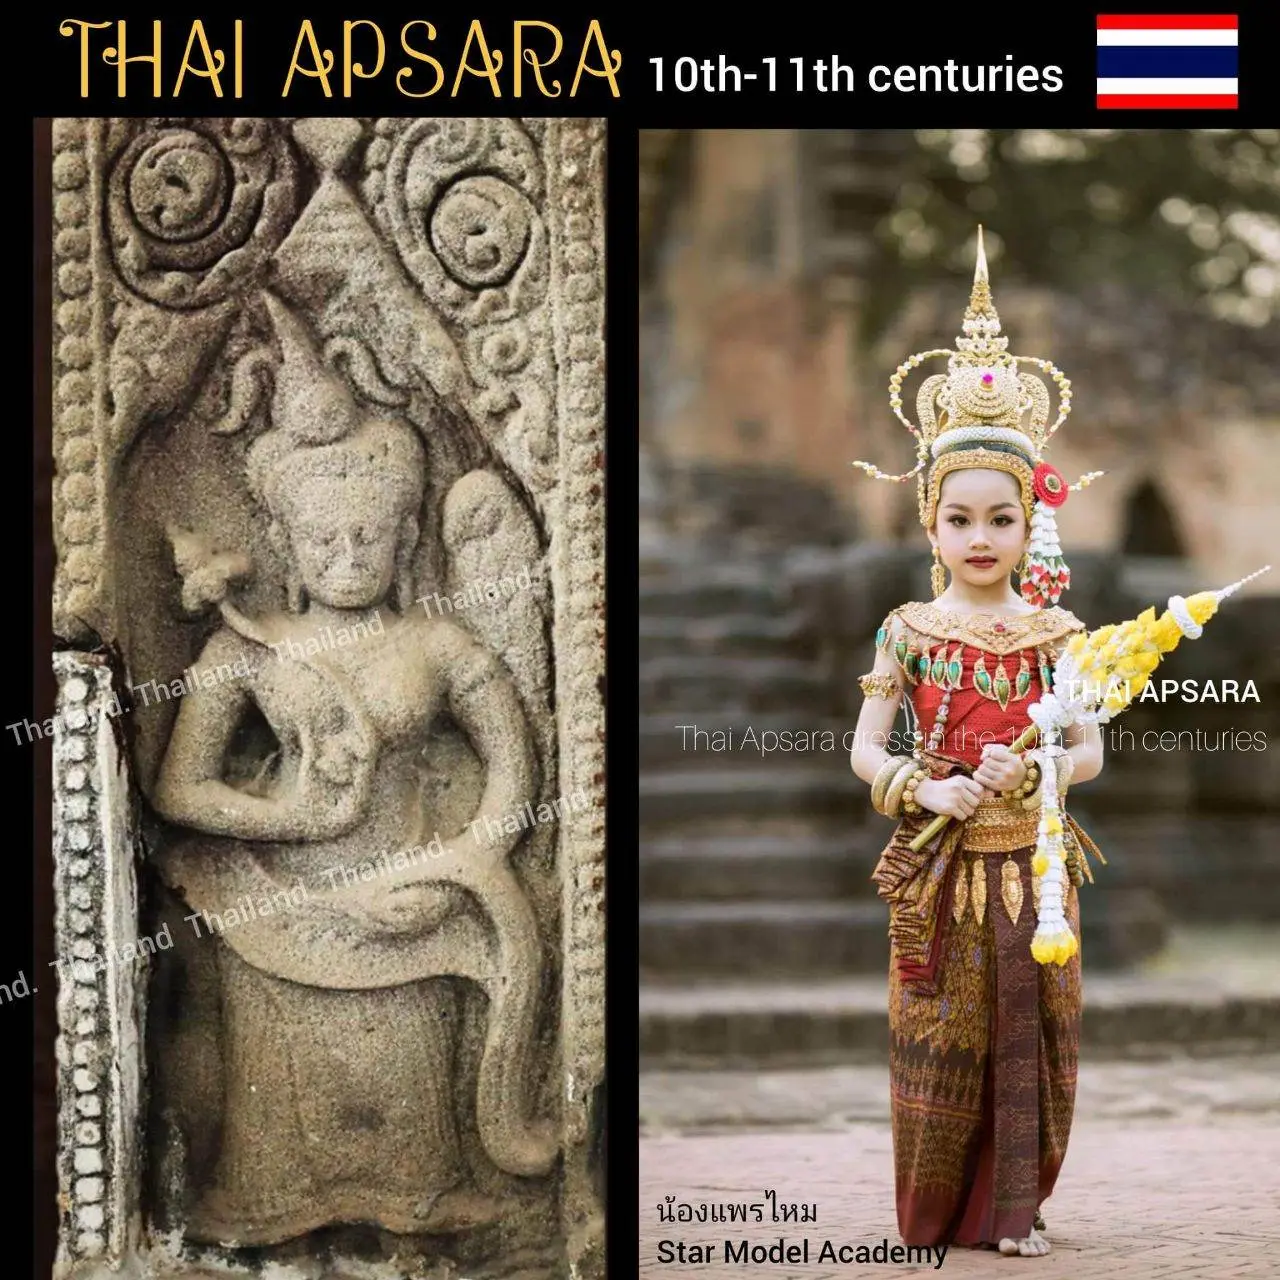 Thailand Apsara. Thai Apsorn dance. Apsara history.